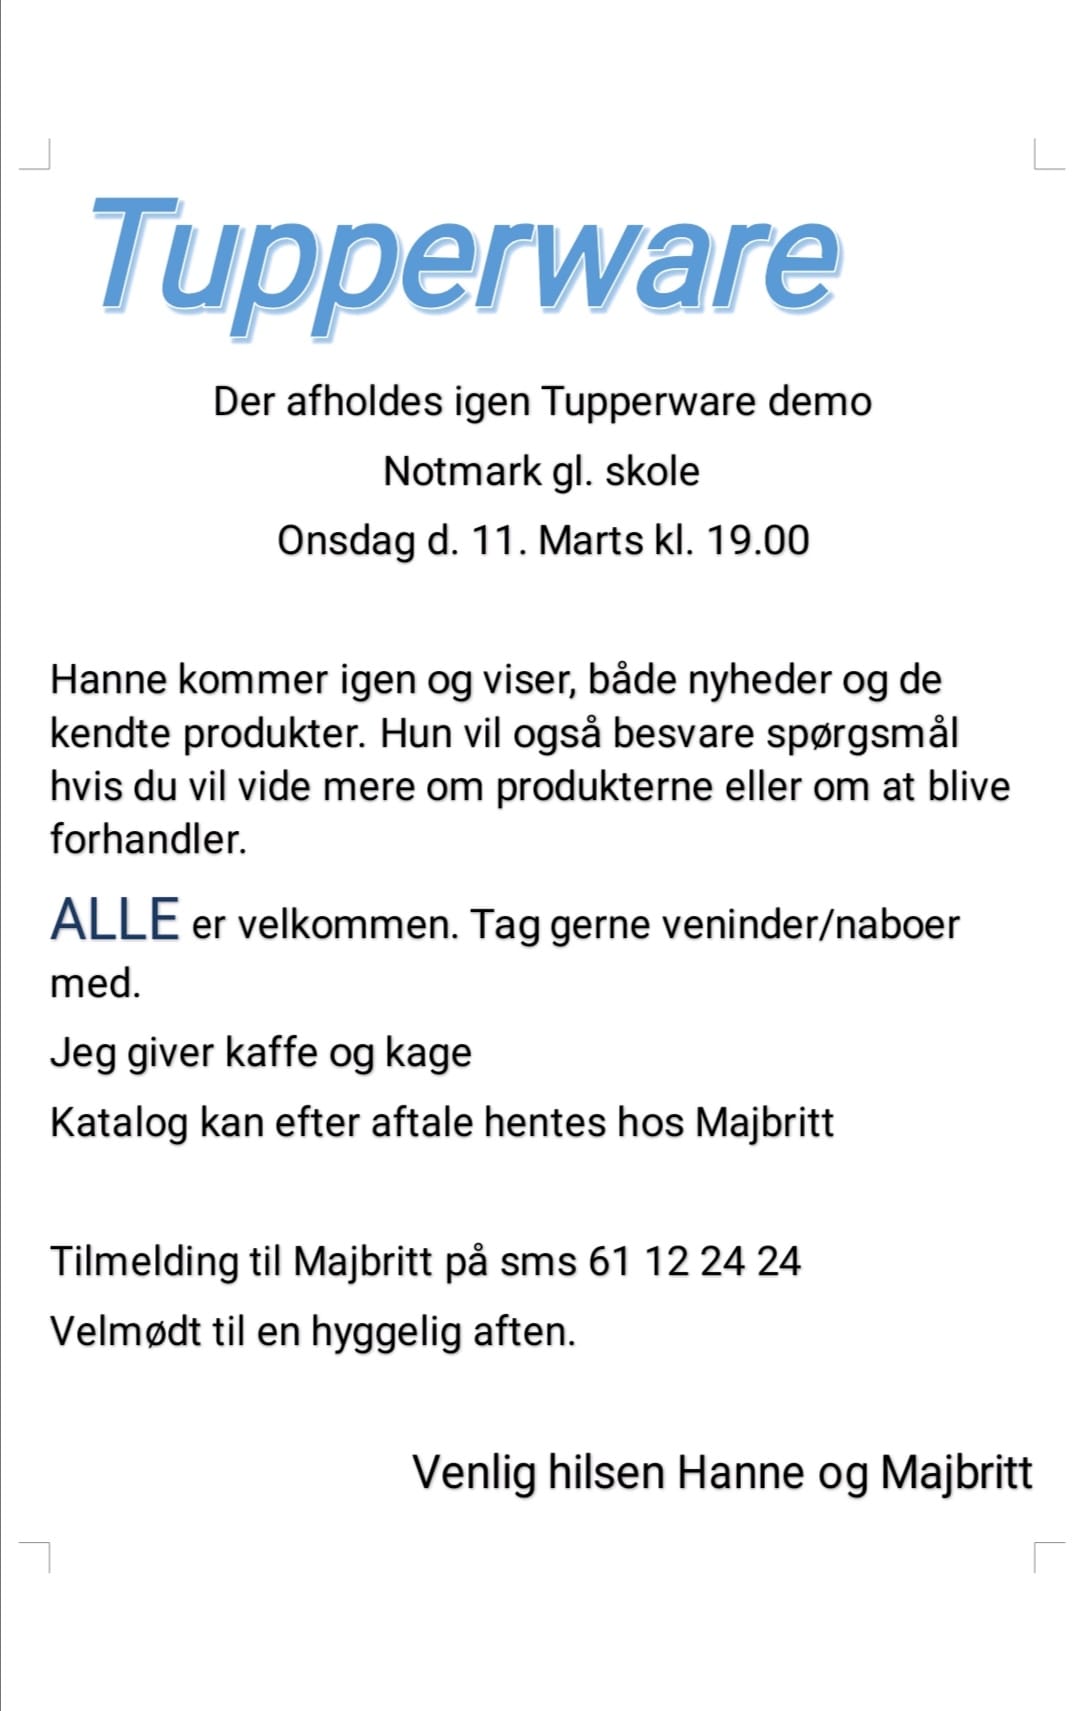 Tupperware demo Hundslev, Almsted og Notmark